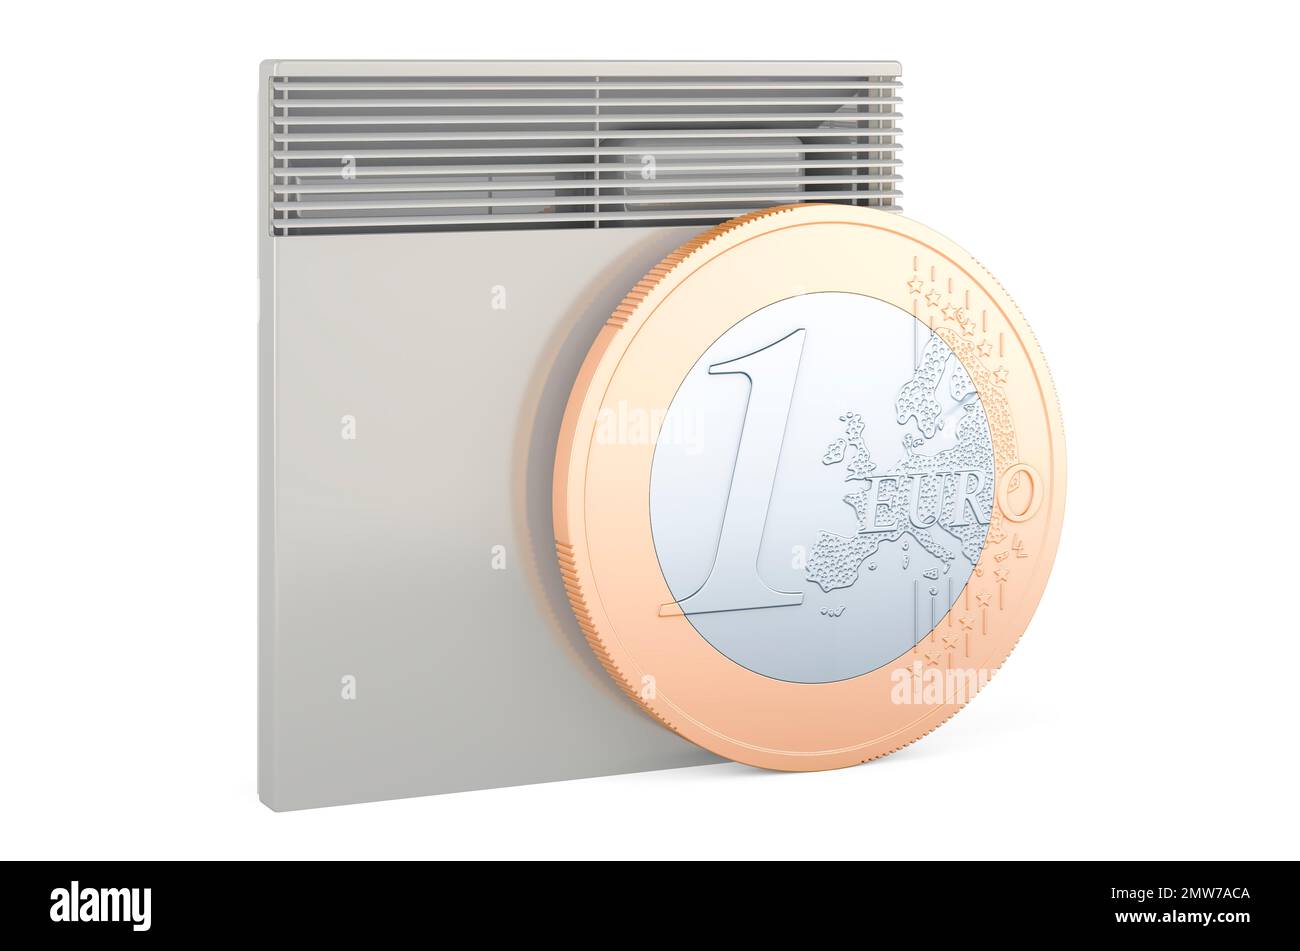 Riscaldatore convettivo con moneta europea. Concetto di risparmio energetico. 3D rendering isolato su sfondo bianco Foto Stock